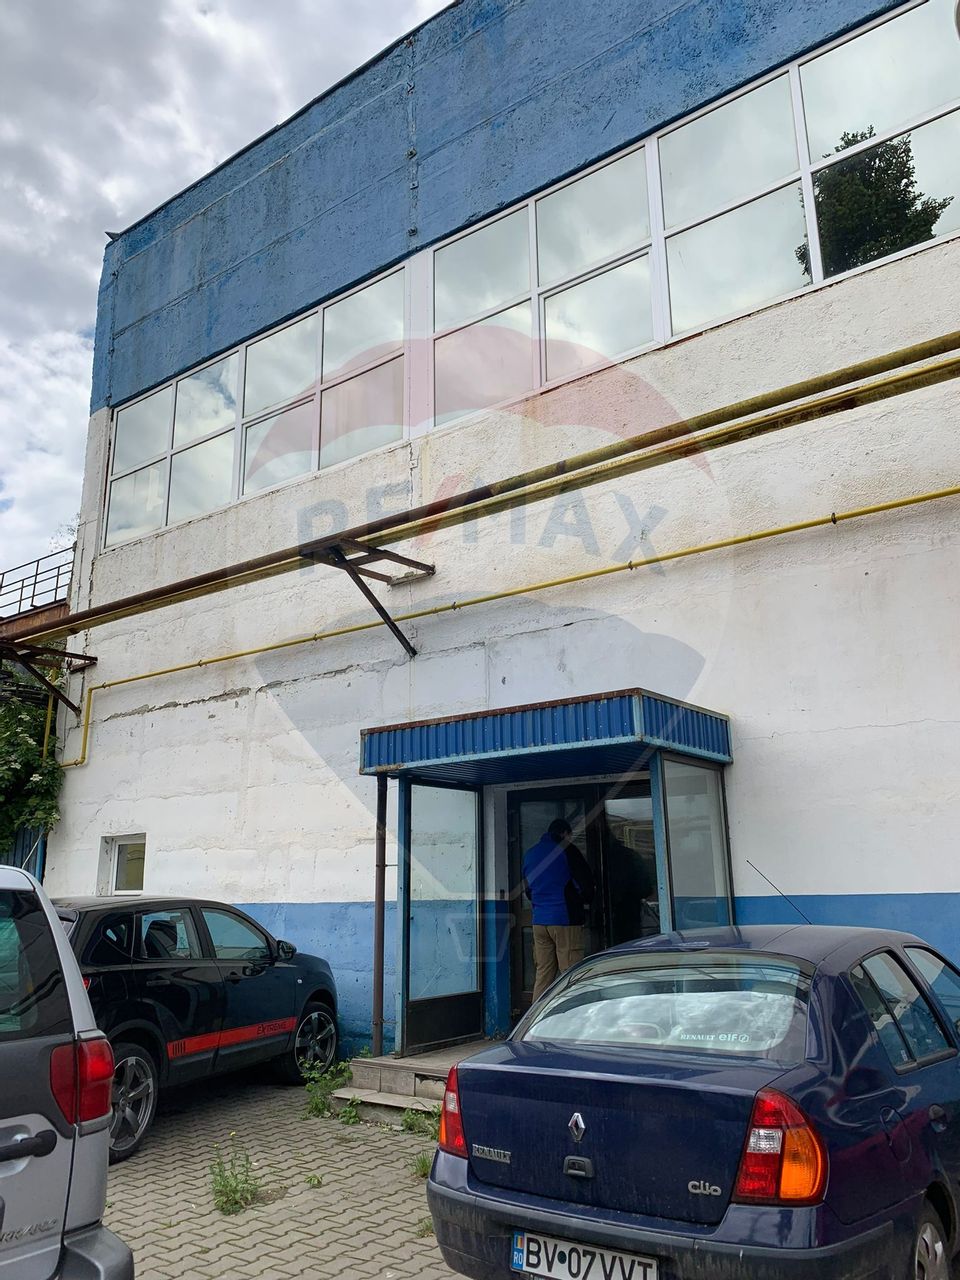 Hală de vânzare, zona industrială Făgăraș